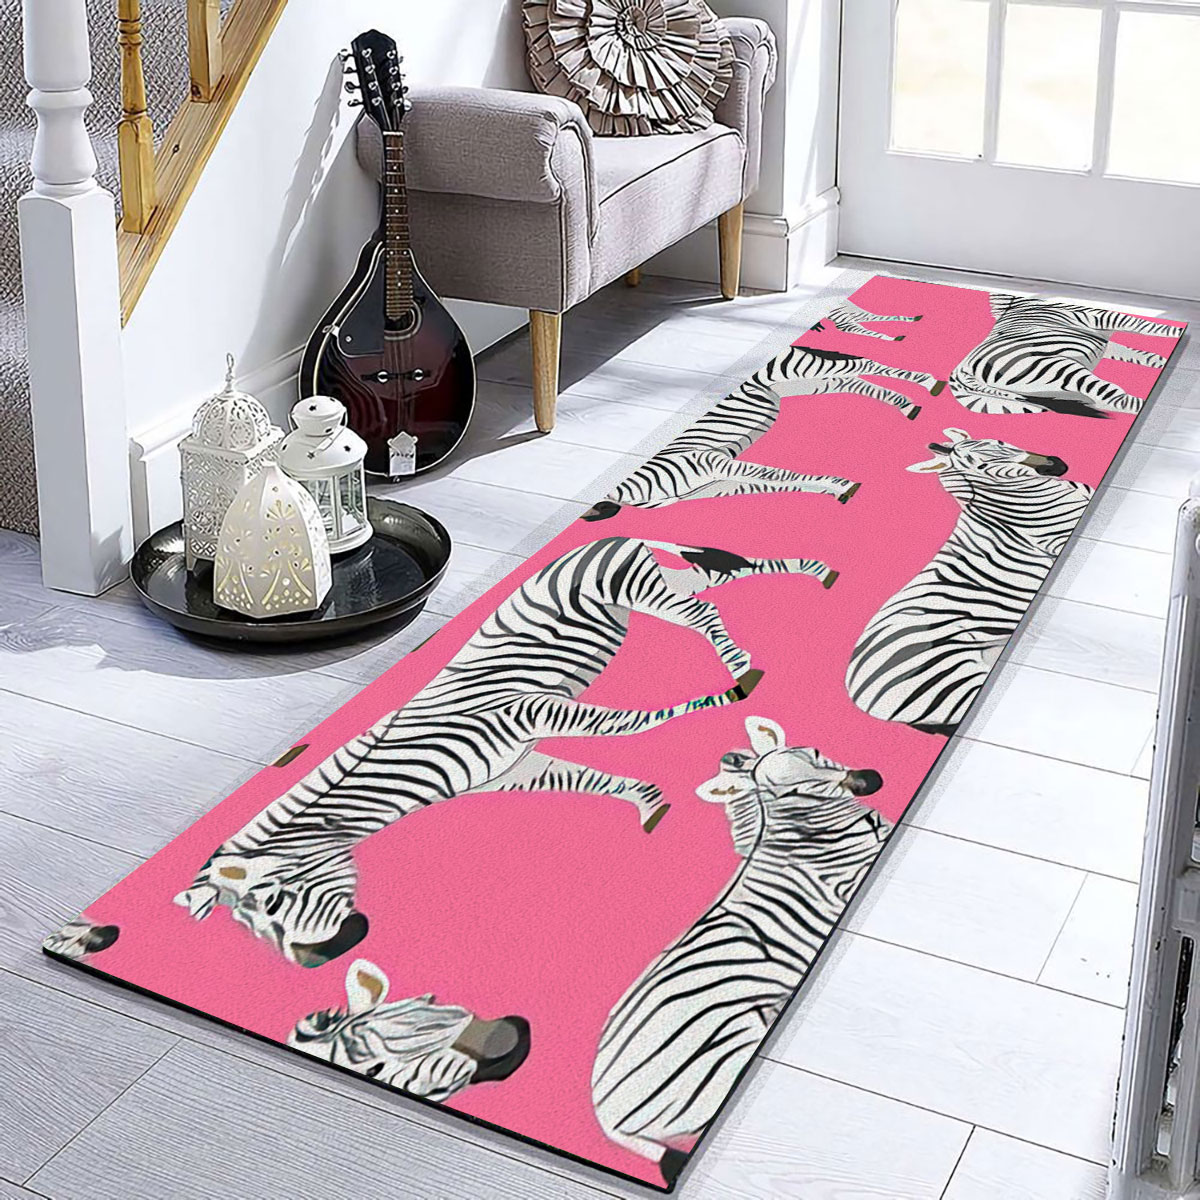 Zebra On Pink Runner Carpet 6